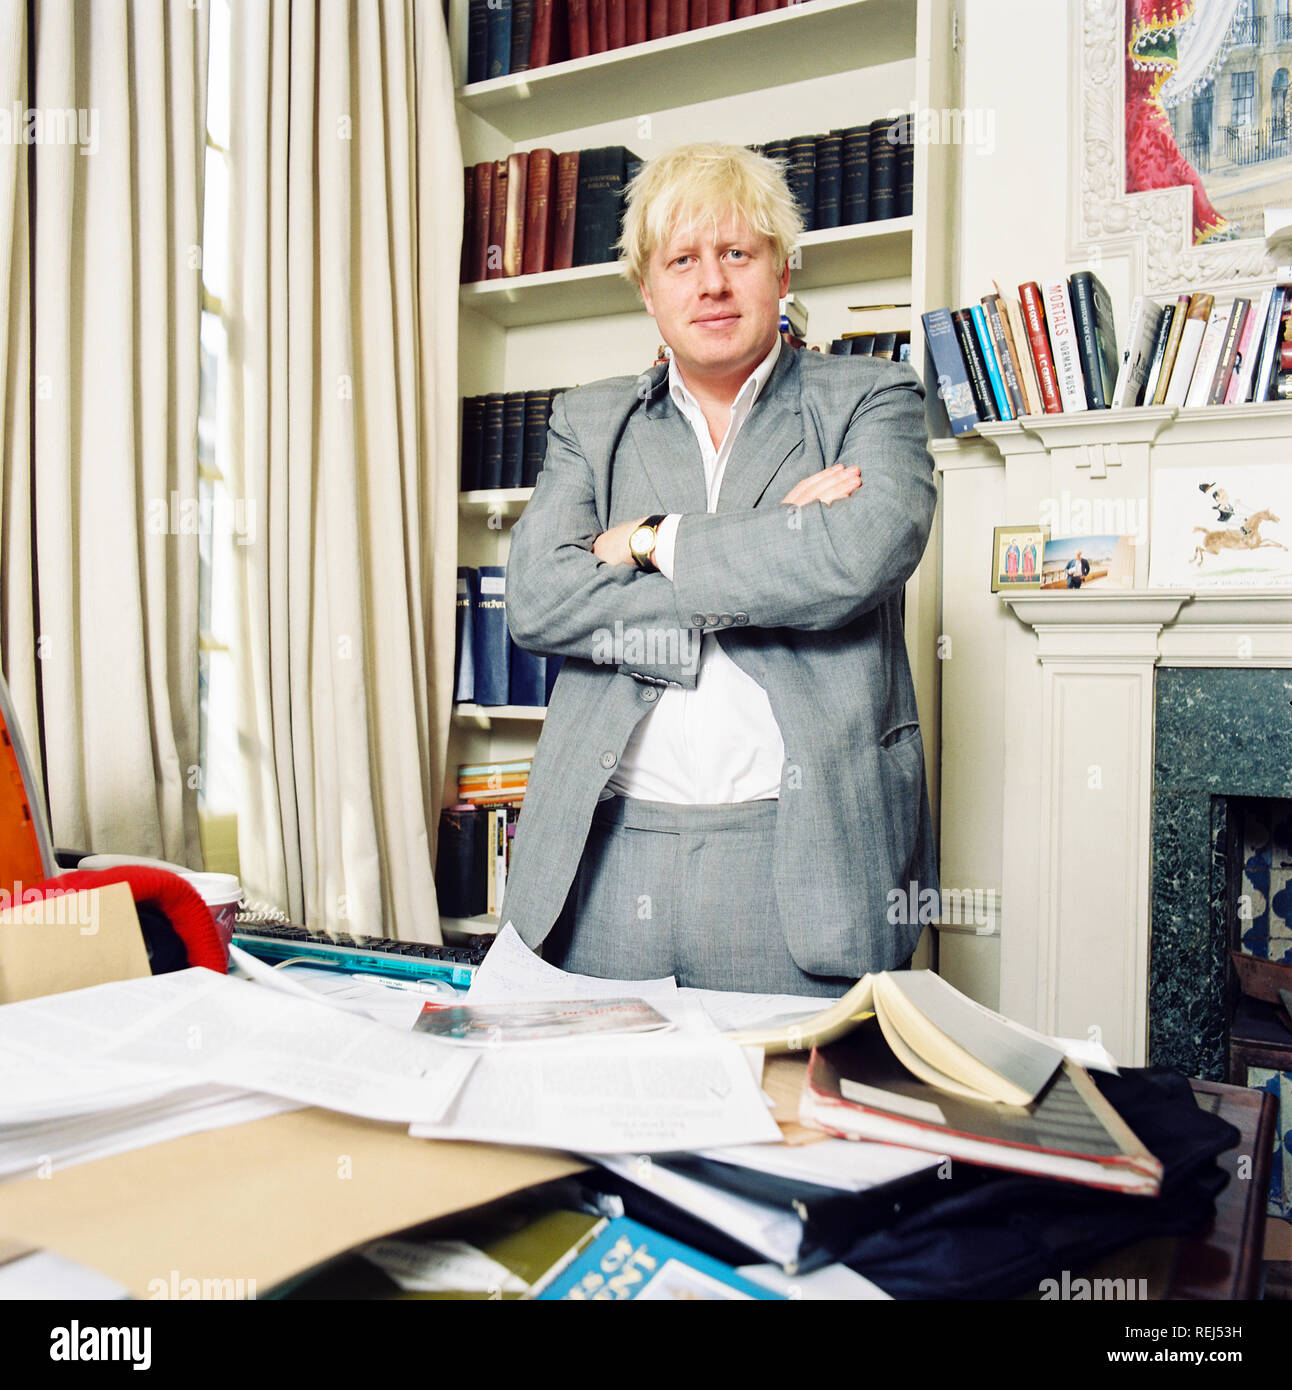 Boris Johnson primo Ministro conservatore, redattore della rivista Spectator fotografato nell'ufficio della rivista Spectator nel 2003, Westminster, Londra, Inghilterra. Foto Stock